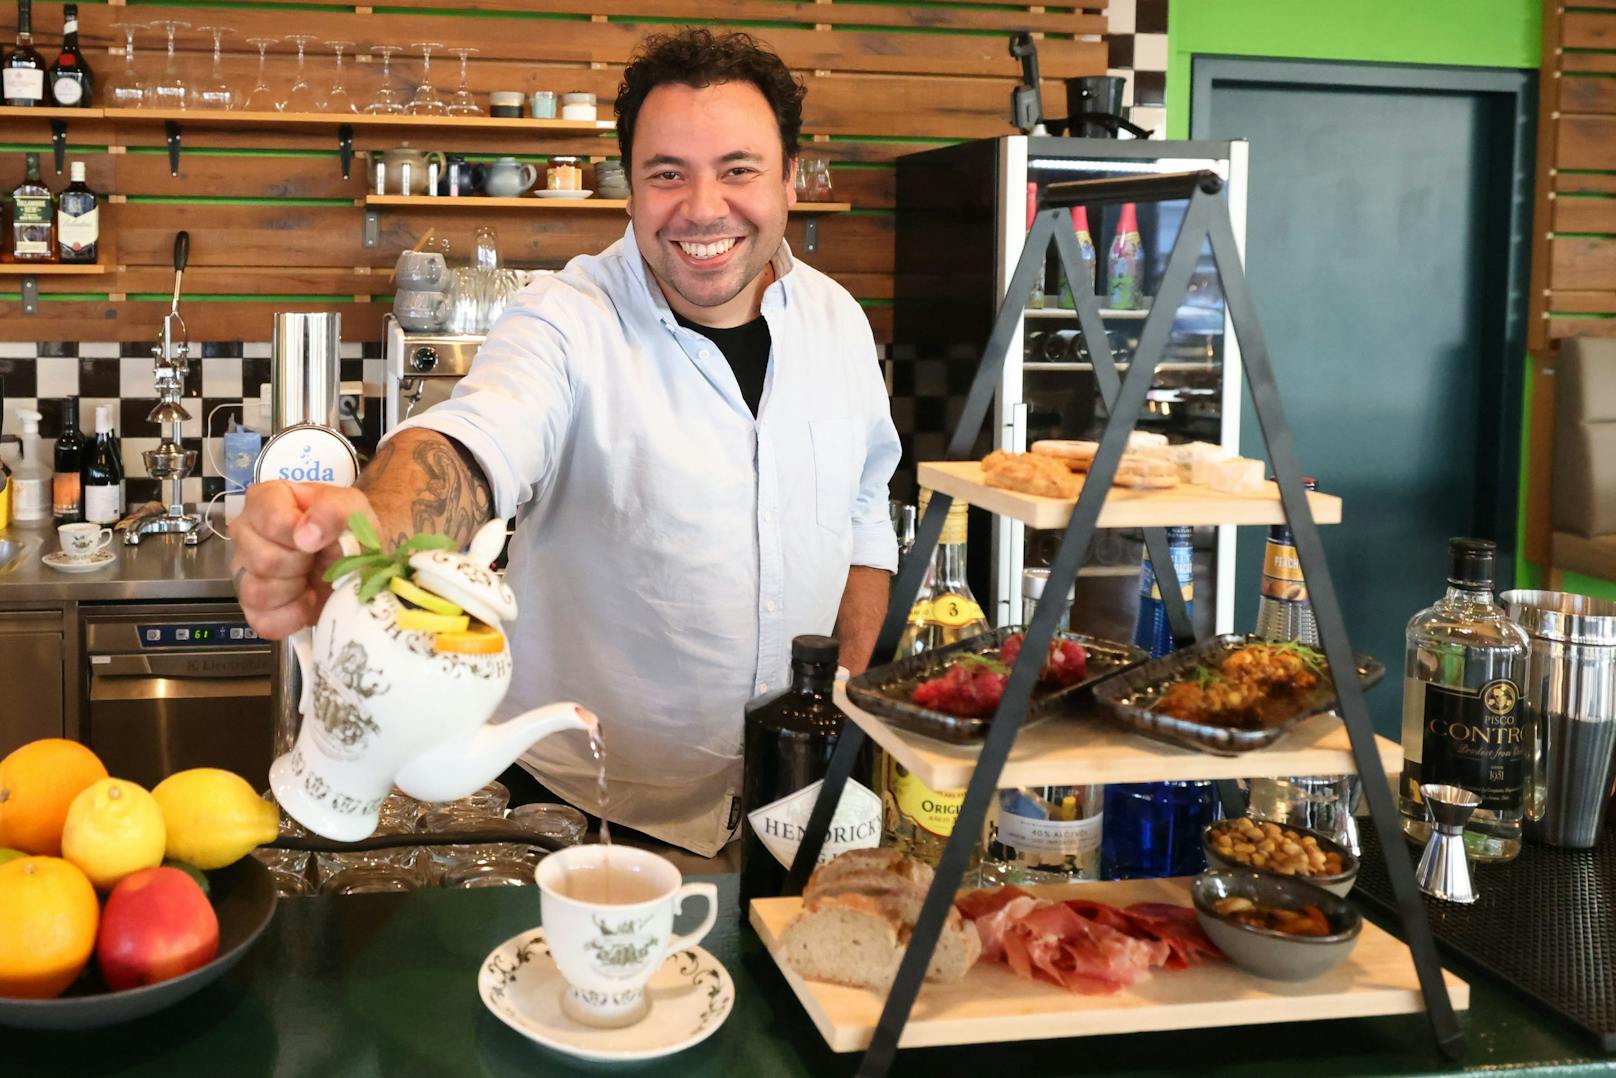 Wer sagt denn, dass man Longdrinks nicht anders servieren kann? Bei Filippo Karawatt (37) gibt's Cocktails aus der Teekanne zur Snack-Etagère.